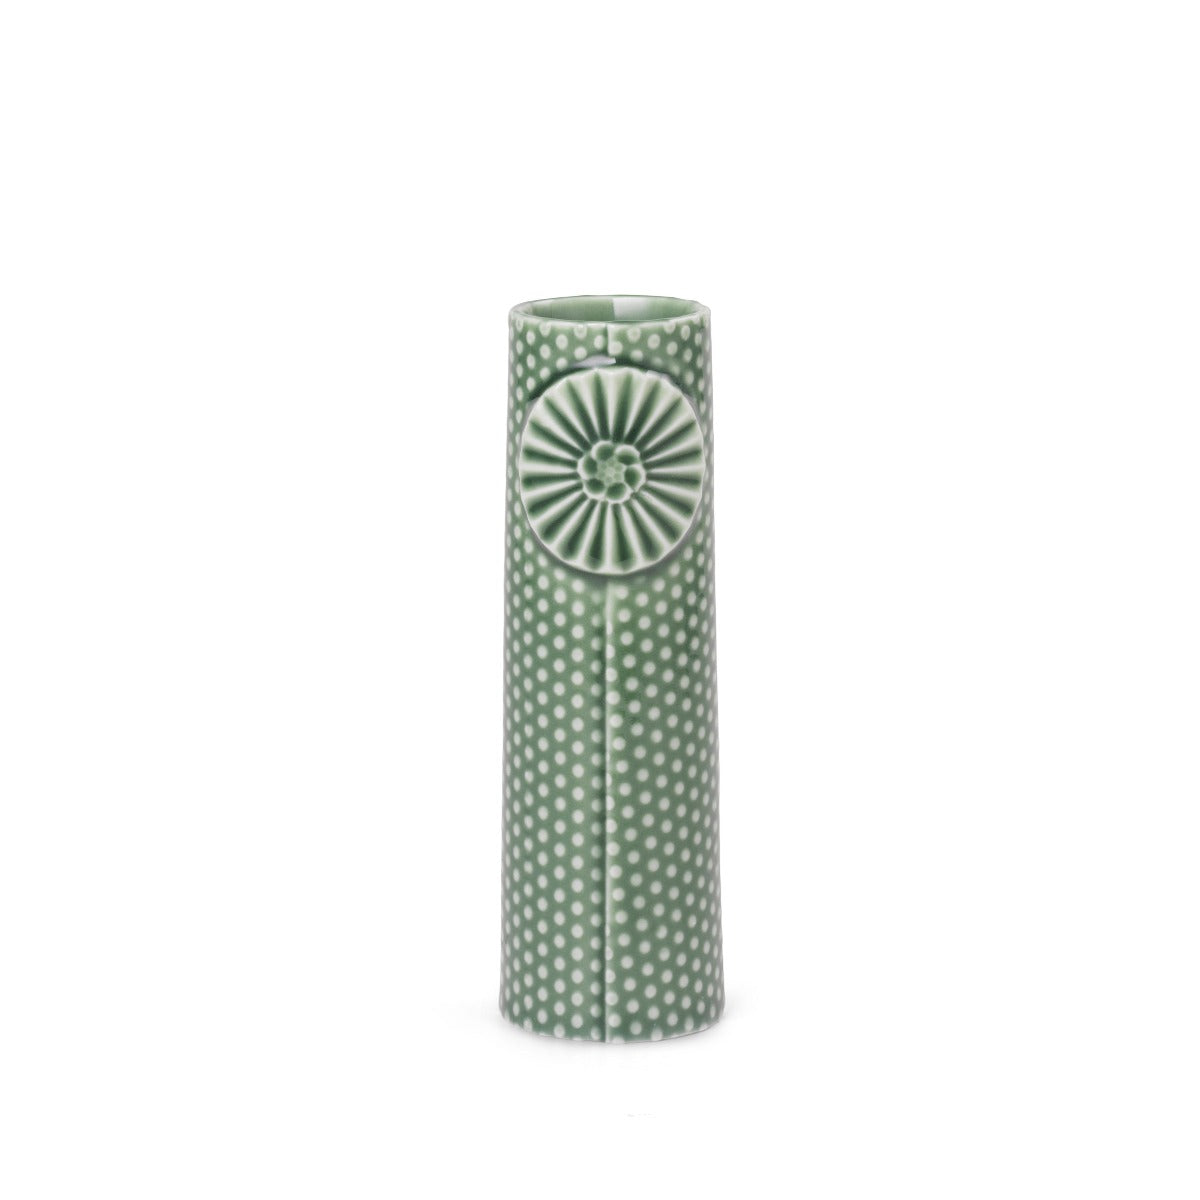 Brobrygge Bliv oppe arbejder Køb Pipanella Dot mini vase - grøn fra Dottir online | Bahne